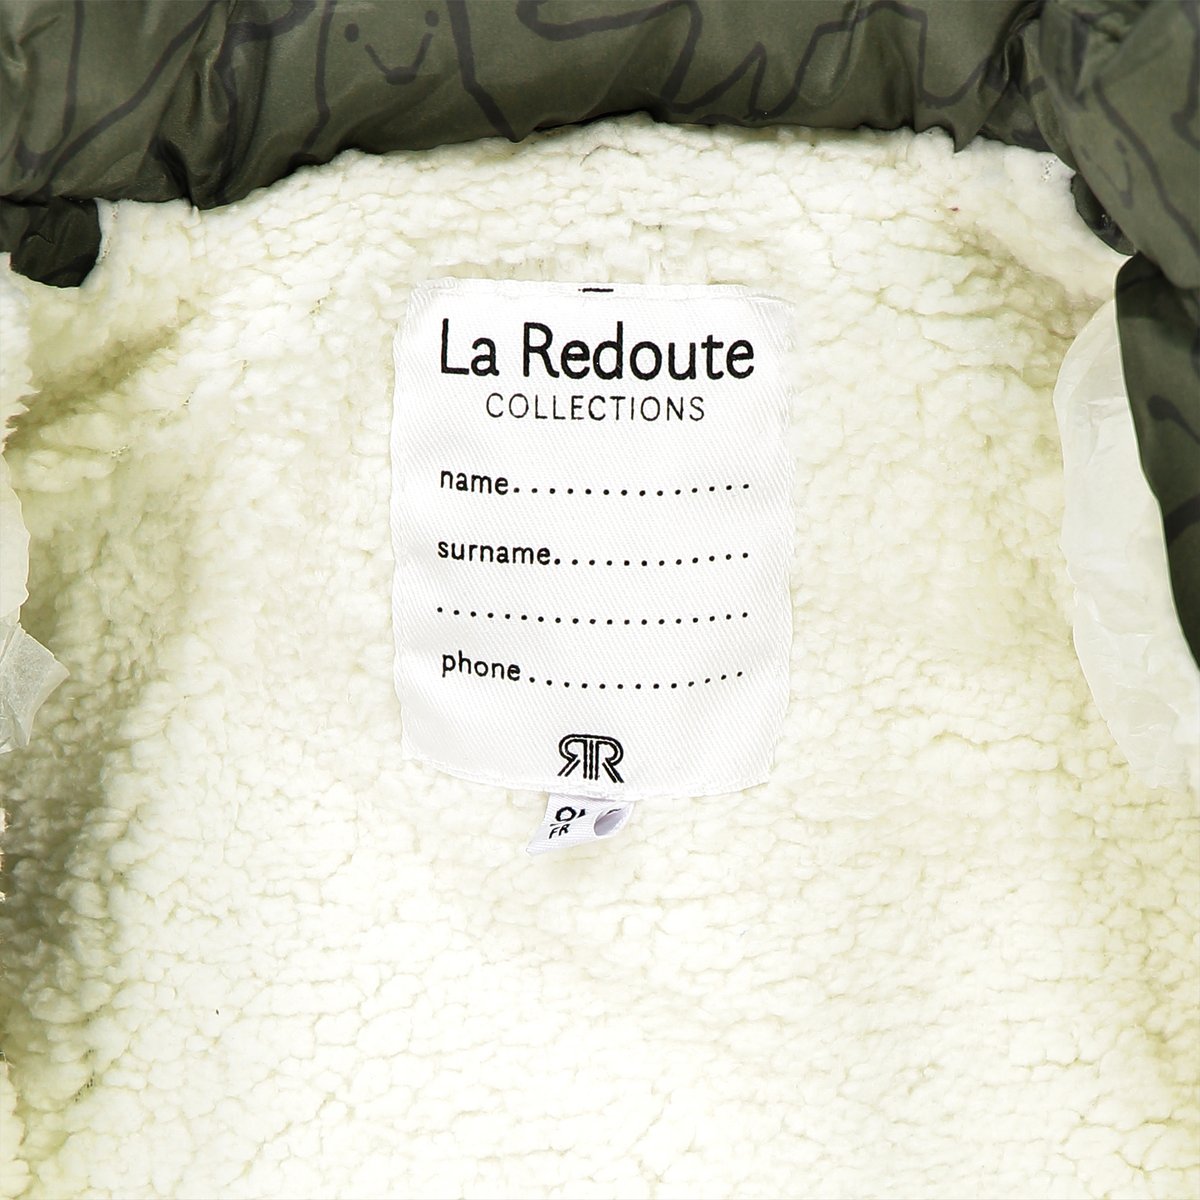 Утепленная La Redoute Стеганная куртка с капюшоном и принтом  мес 3 мес. - 60 см другие, размер 3 мес. - 60 см - фото 4